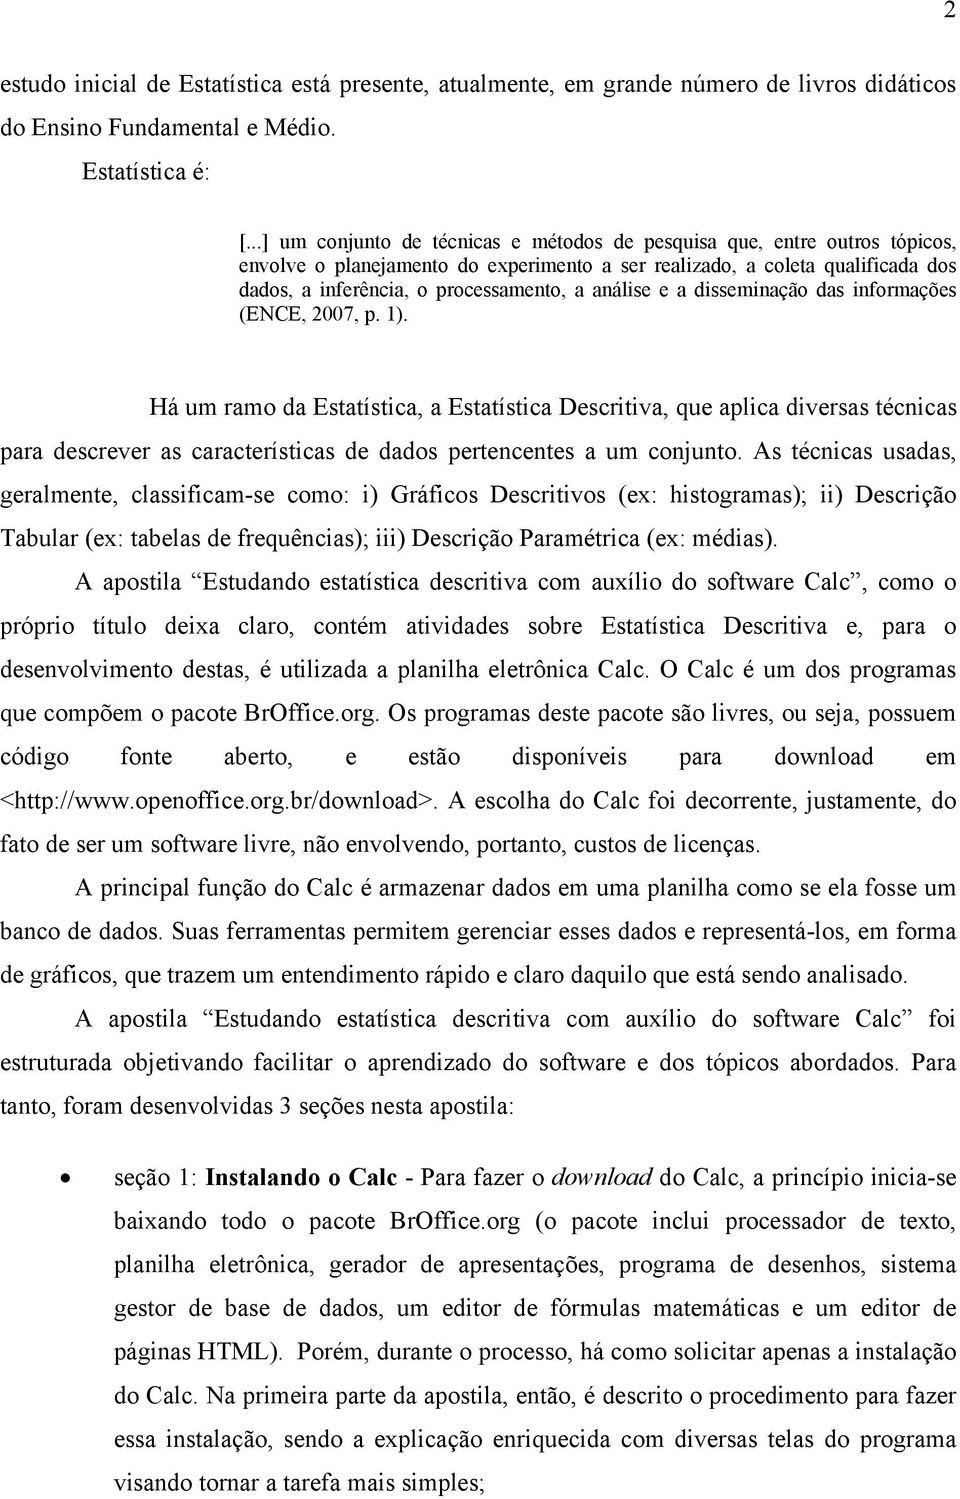 análise e a disseminação das informações (ENCE, 2007, p. 1).